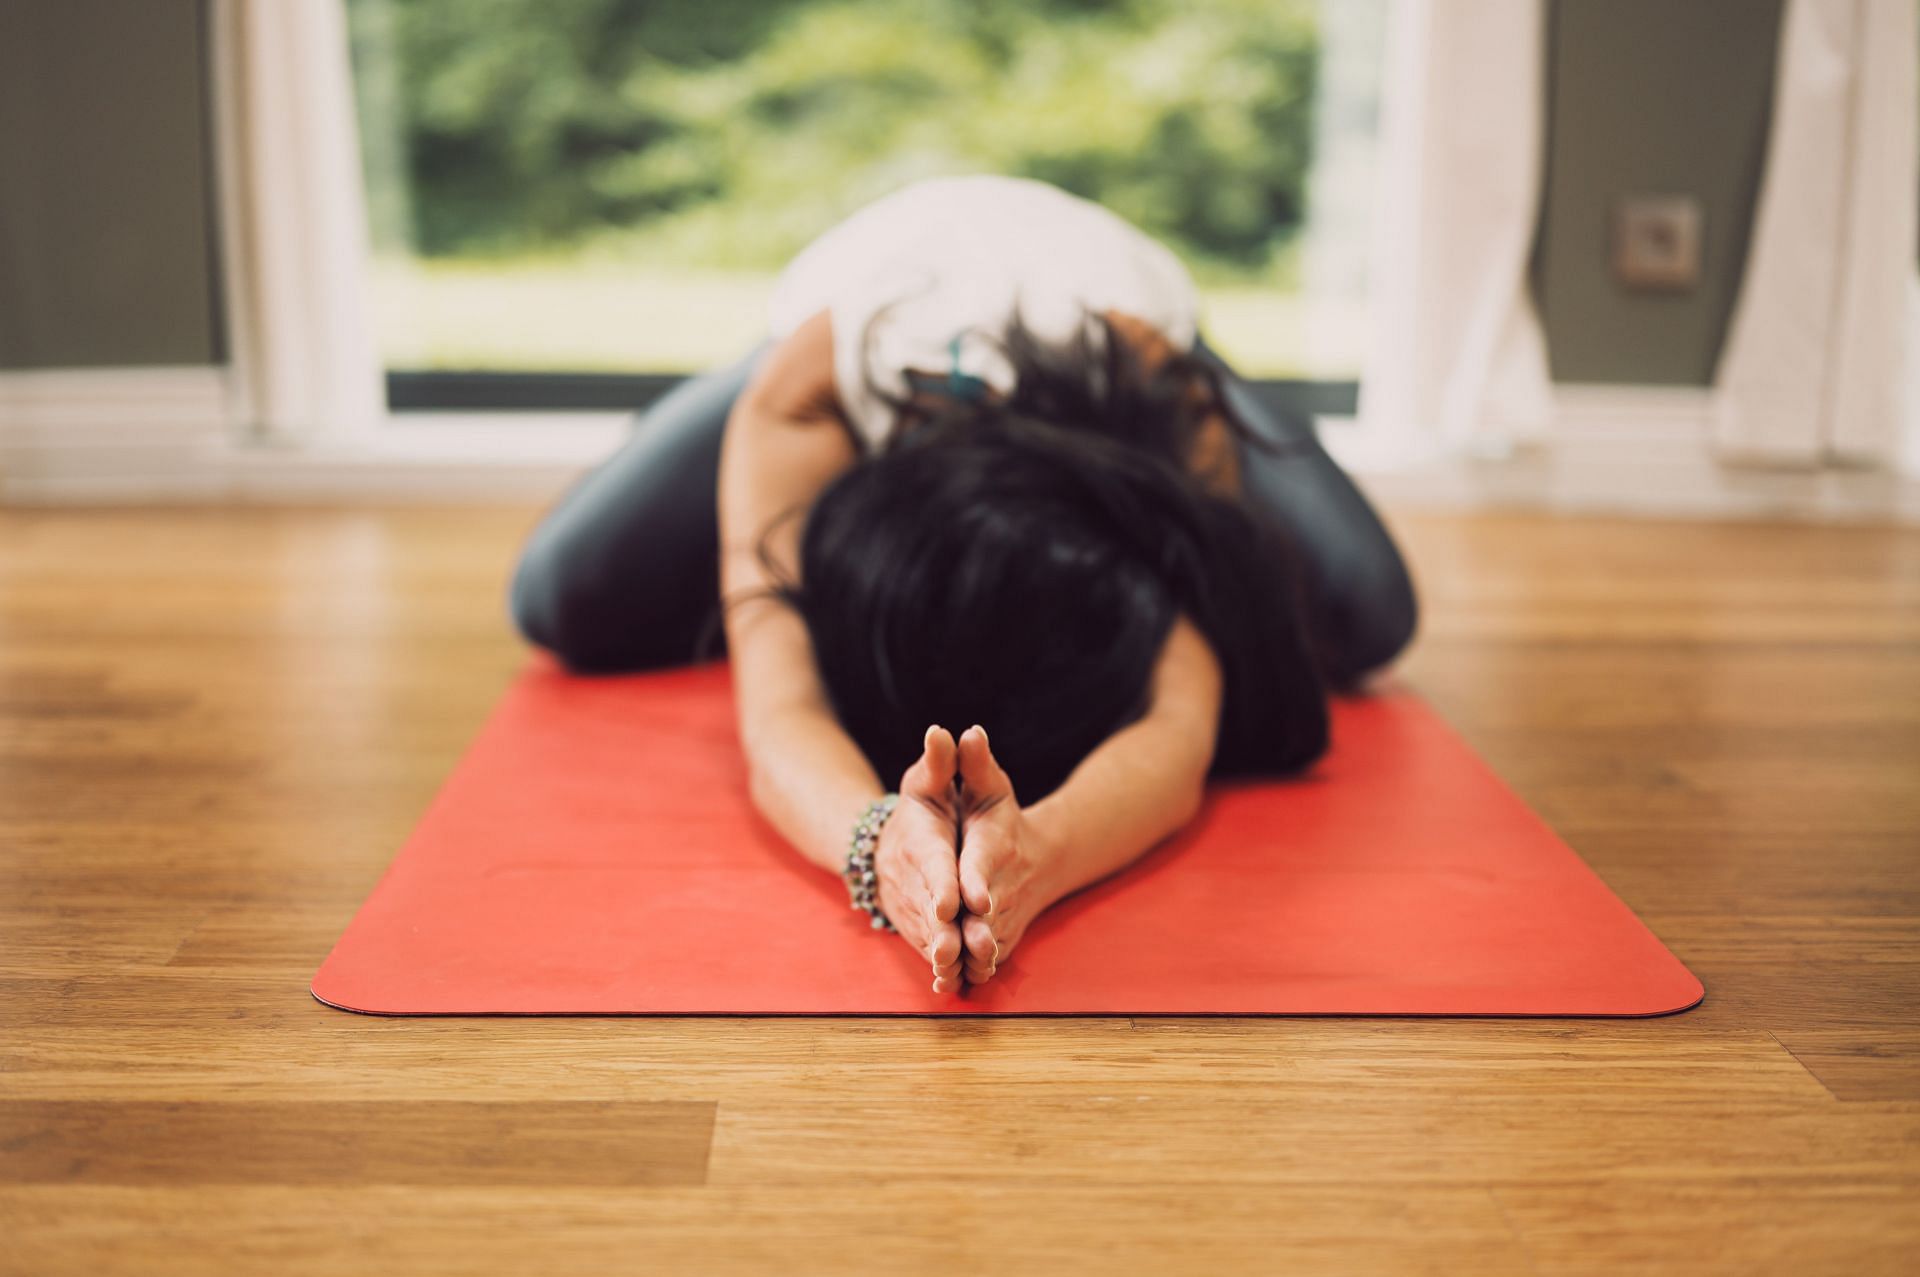 Top 15 Standing Yoga Poses You Need to Know - 7pranayama.com